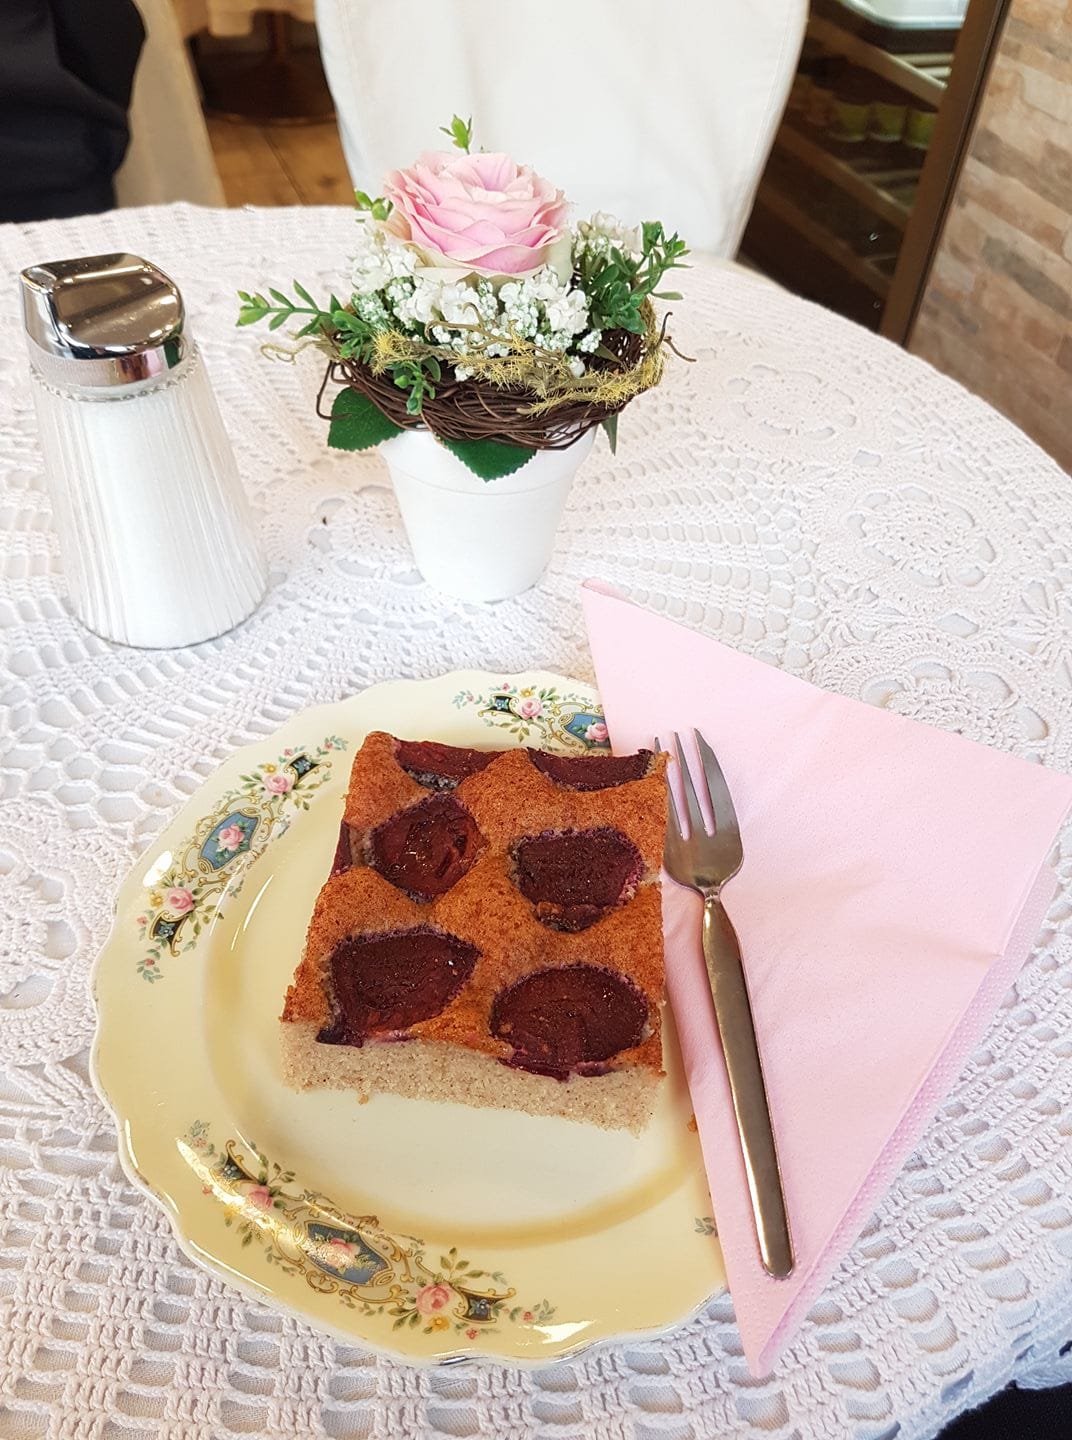 der beliebte und hausgemachte Zwetschkenkuchen von Sylvies Kostbarkeiten am Benediktinermarkt in Klagenfurt. Liebevoll angerichtet auf einem verzierten Porzellanteller mit rosa Serviette. Der Tisch ist mit einem Häkeldeckchen und einen kleinen Topf mit einer rosa Rose geschmückt